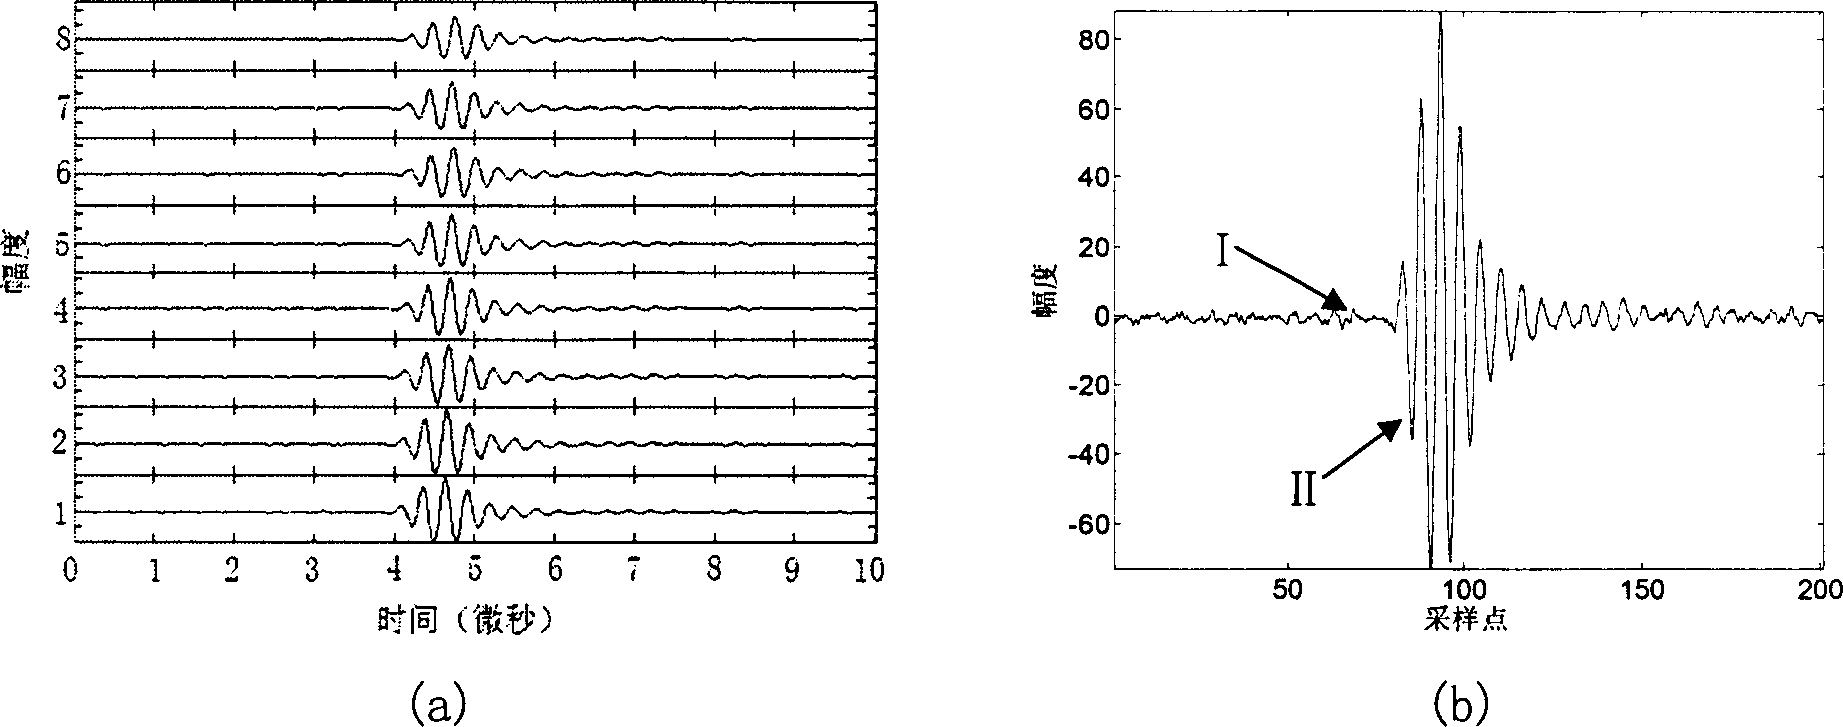 Ultrasonic dynamic receiving apodization method based on Ôû�-Ôêæ transformation